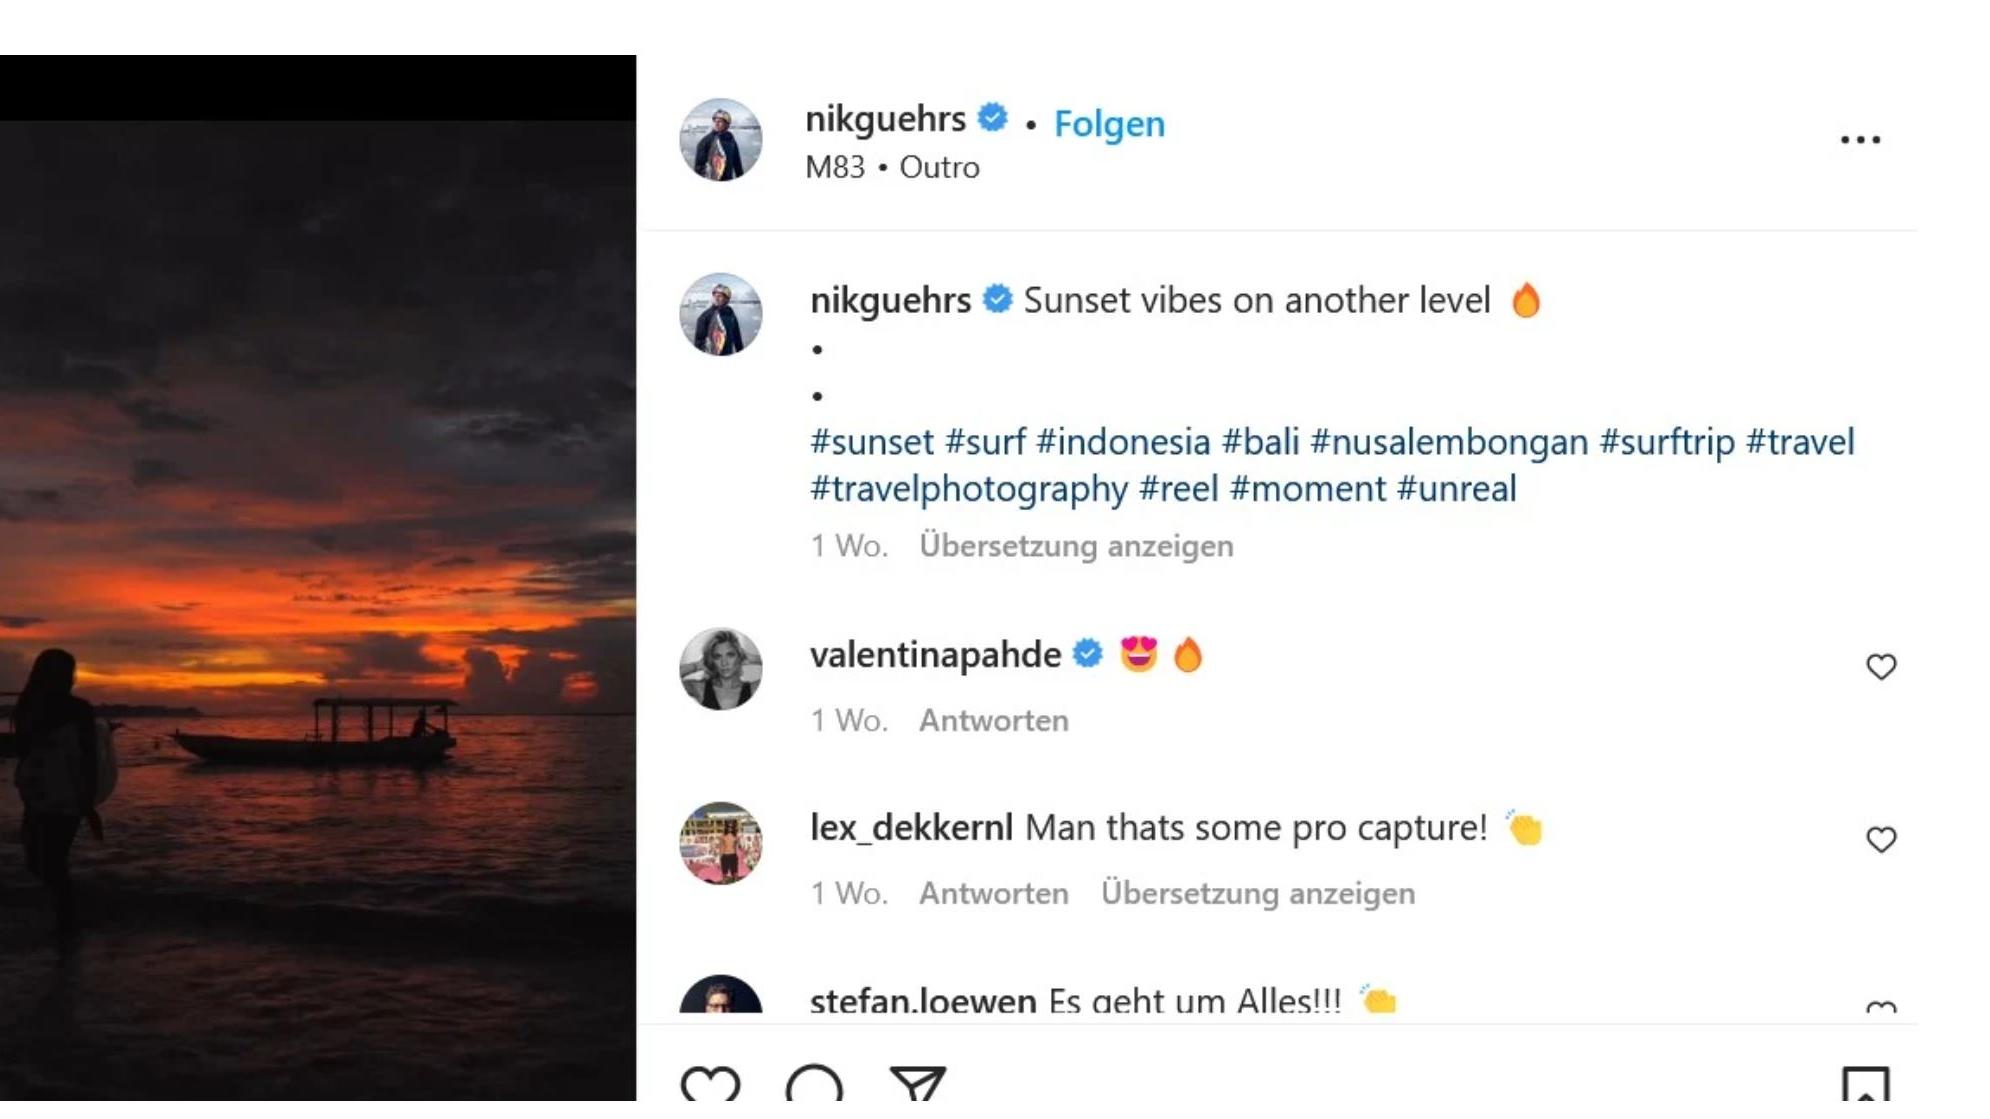 Valentina Pahde lässt auf Instagram eindeutige Emojis sprechen. Was hat das zu bedeuten? 